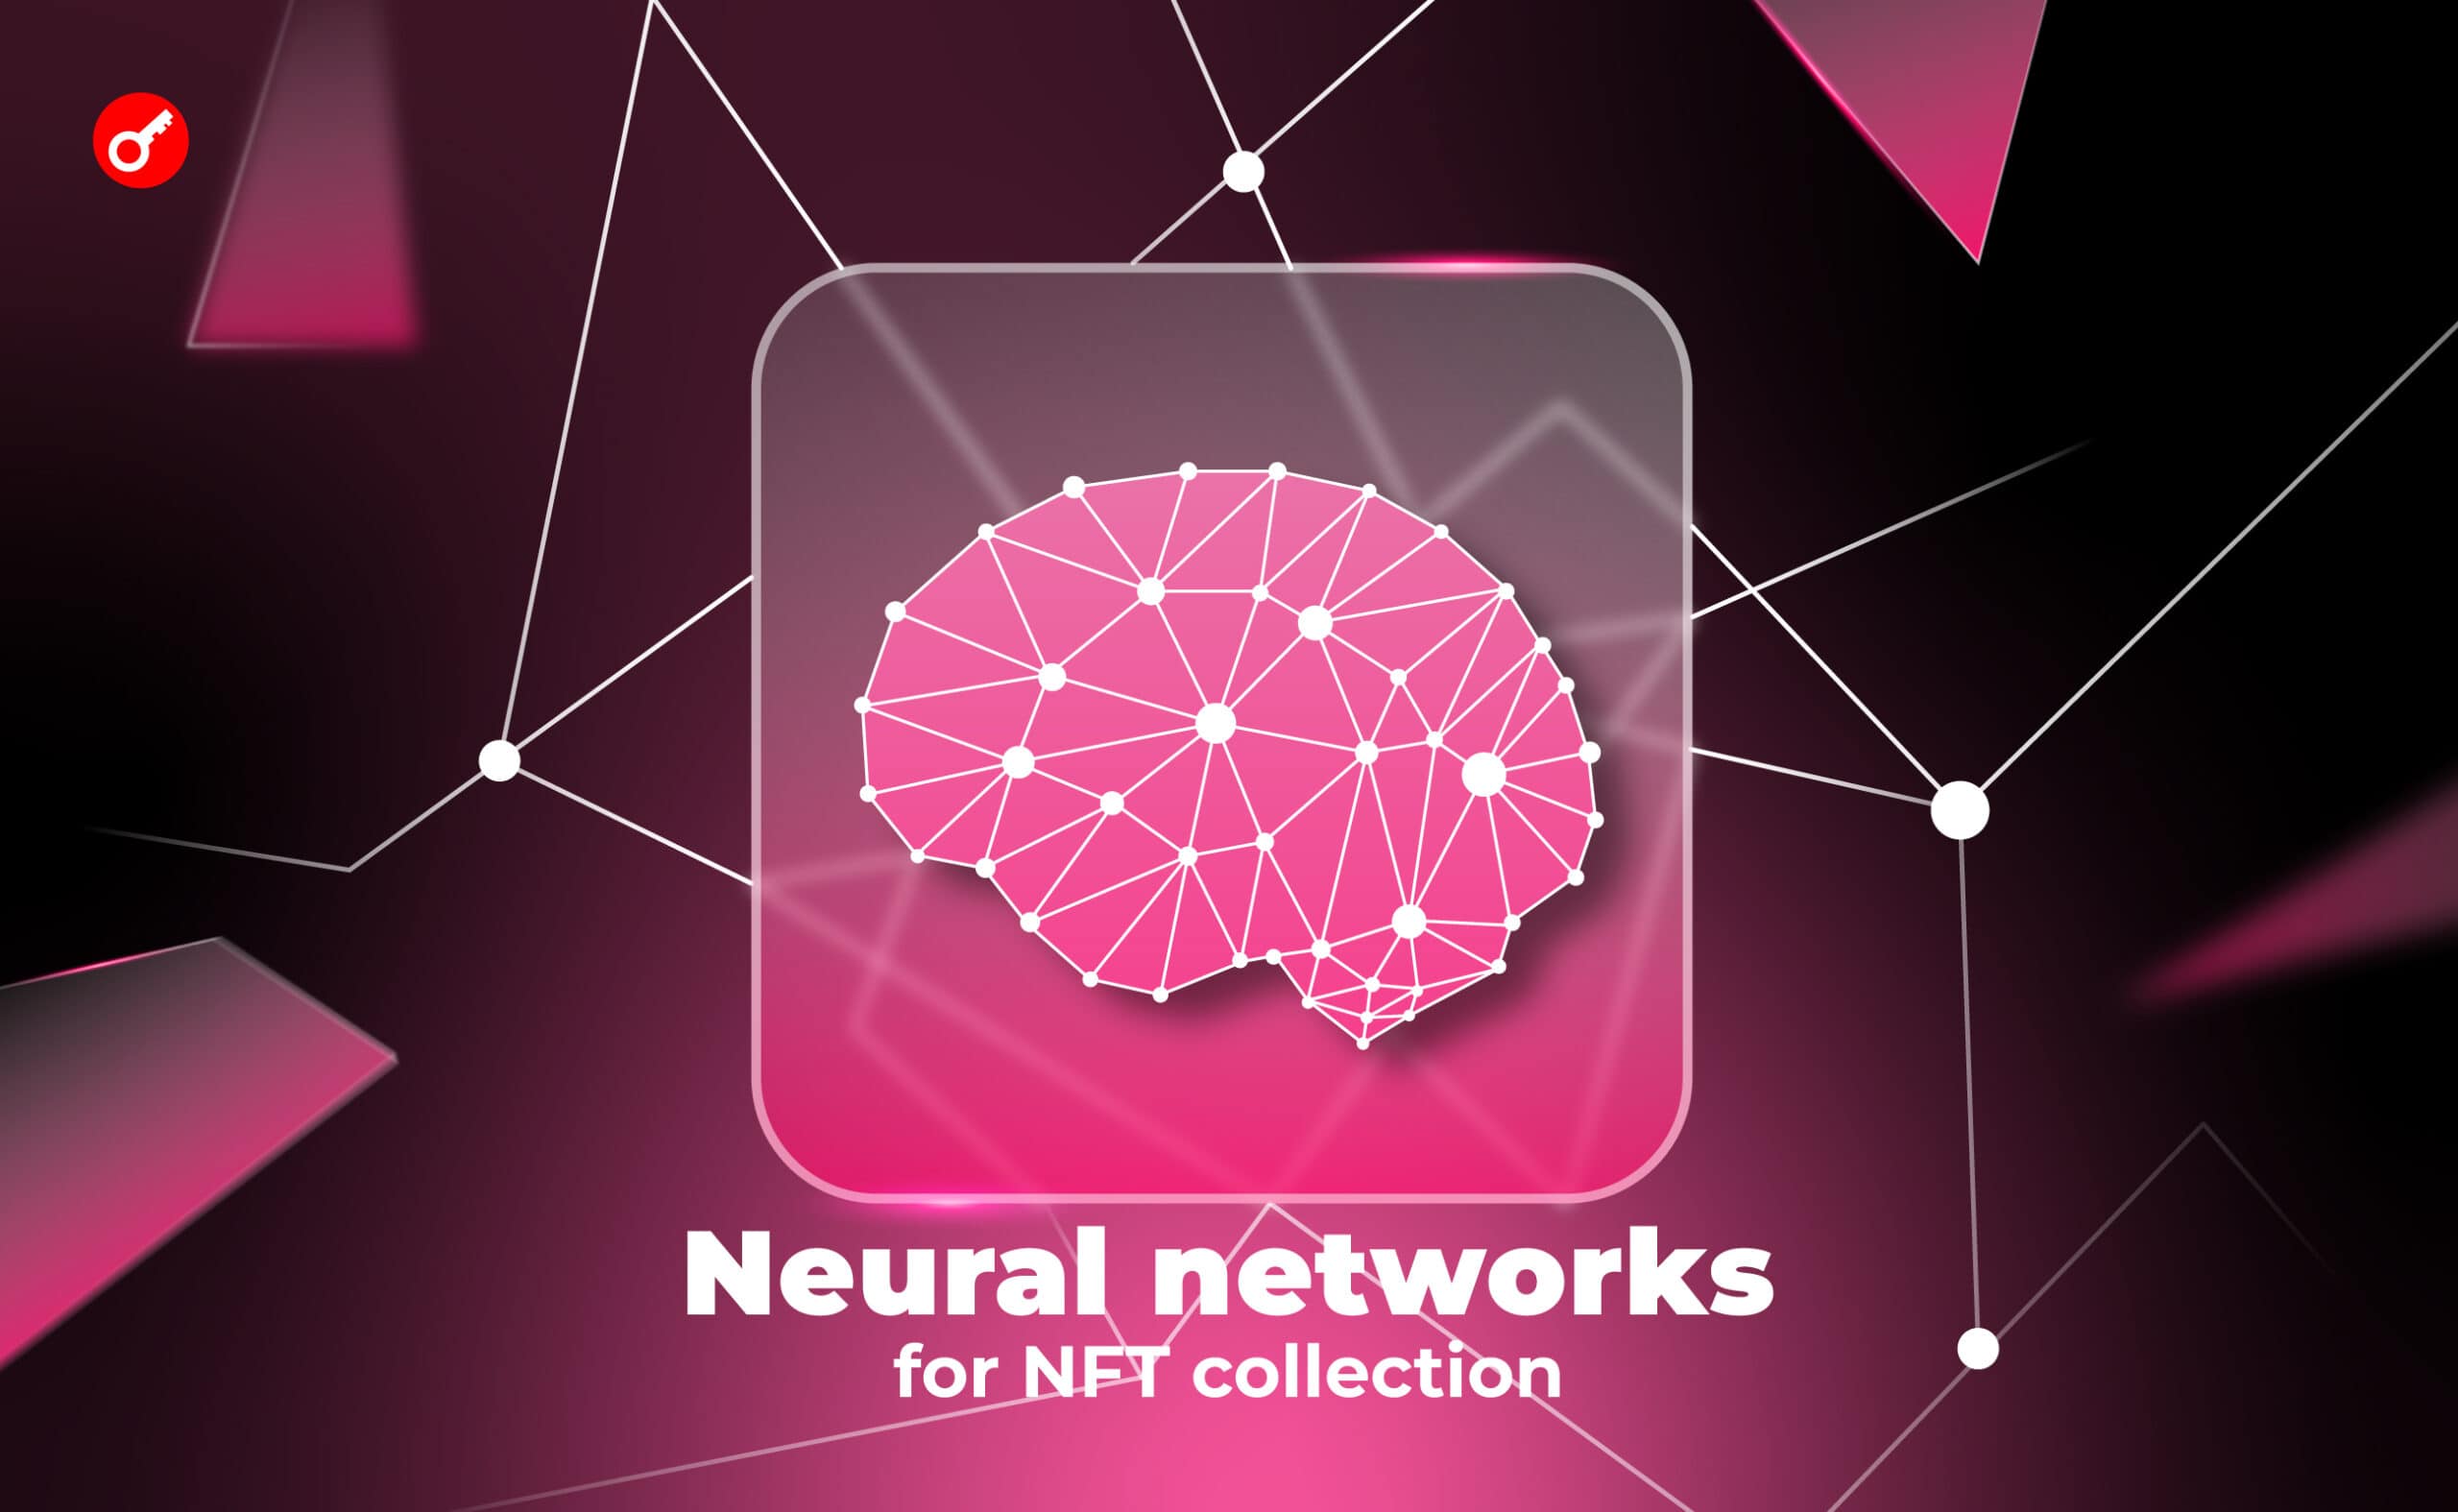 11 найкращих нейромереж для генерації зображень за описом. Створюємо NFT-колекцію за допомогою AI (готові промпти всередині). Головний колаж статті.